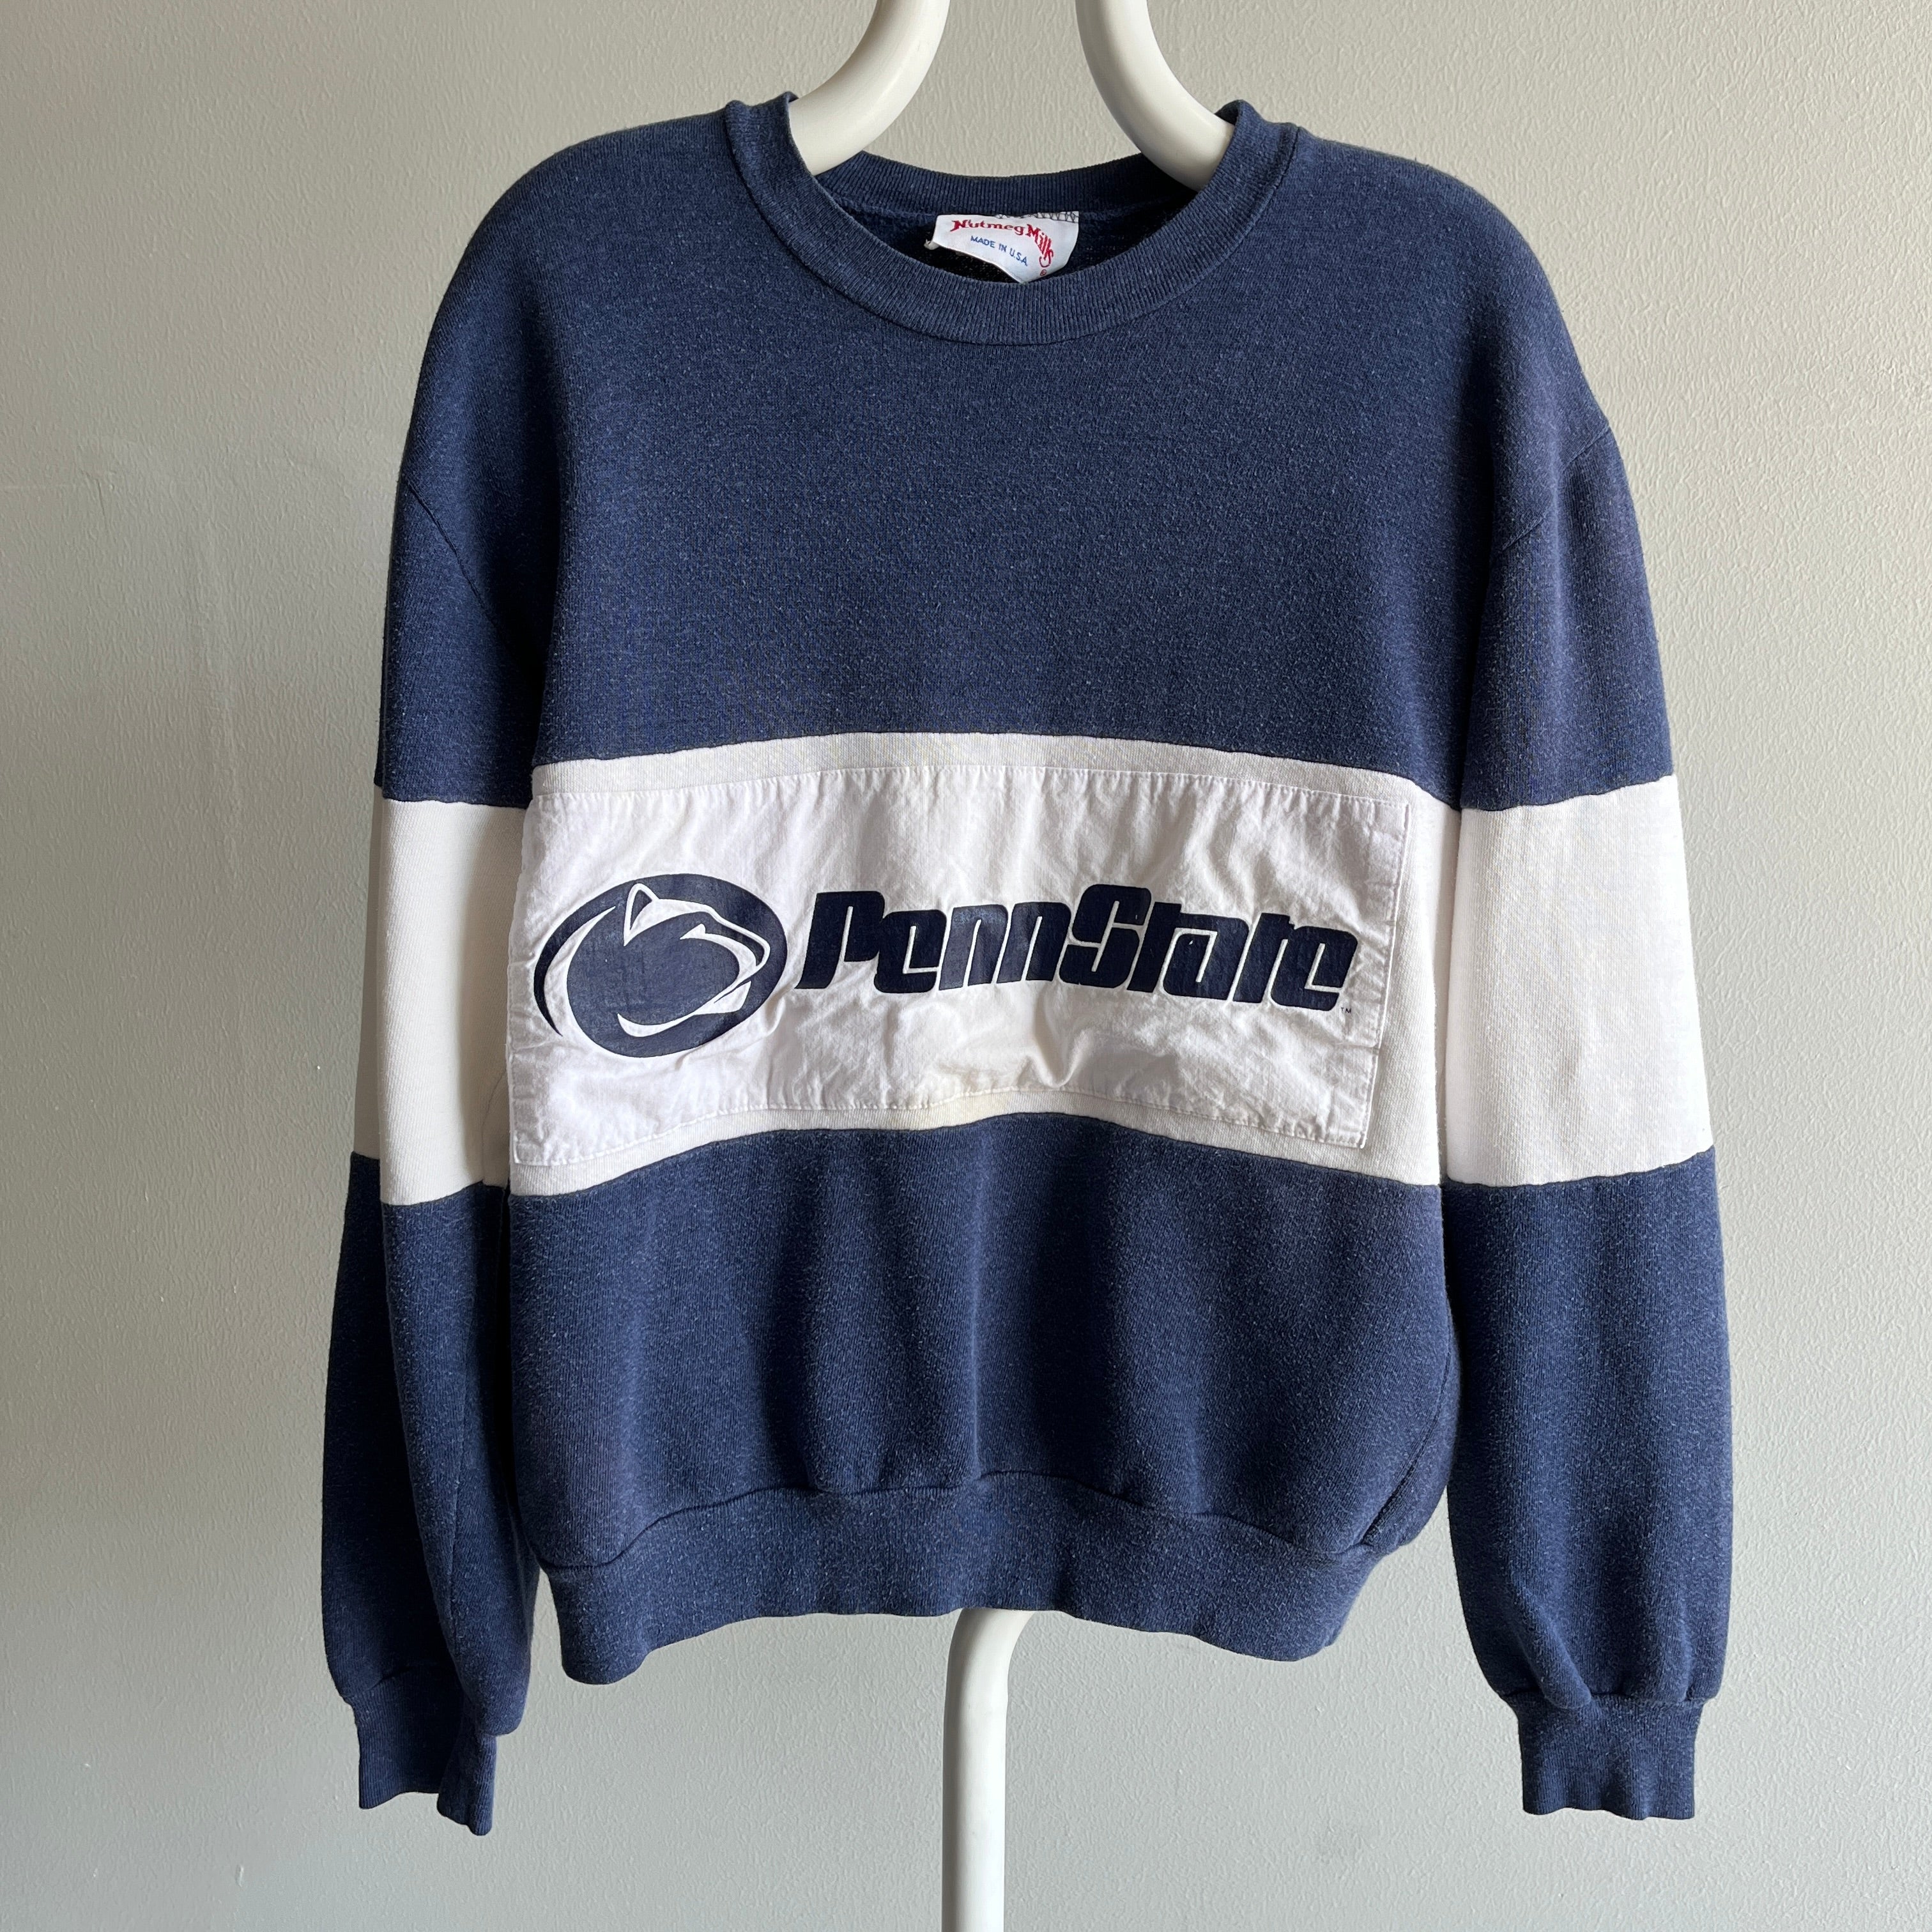 1980s Penn State Color Block Sweatshirt by Nutmeg Mills